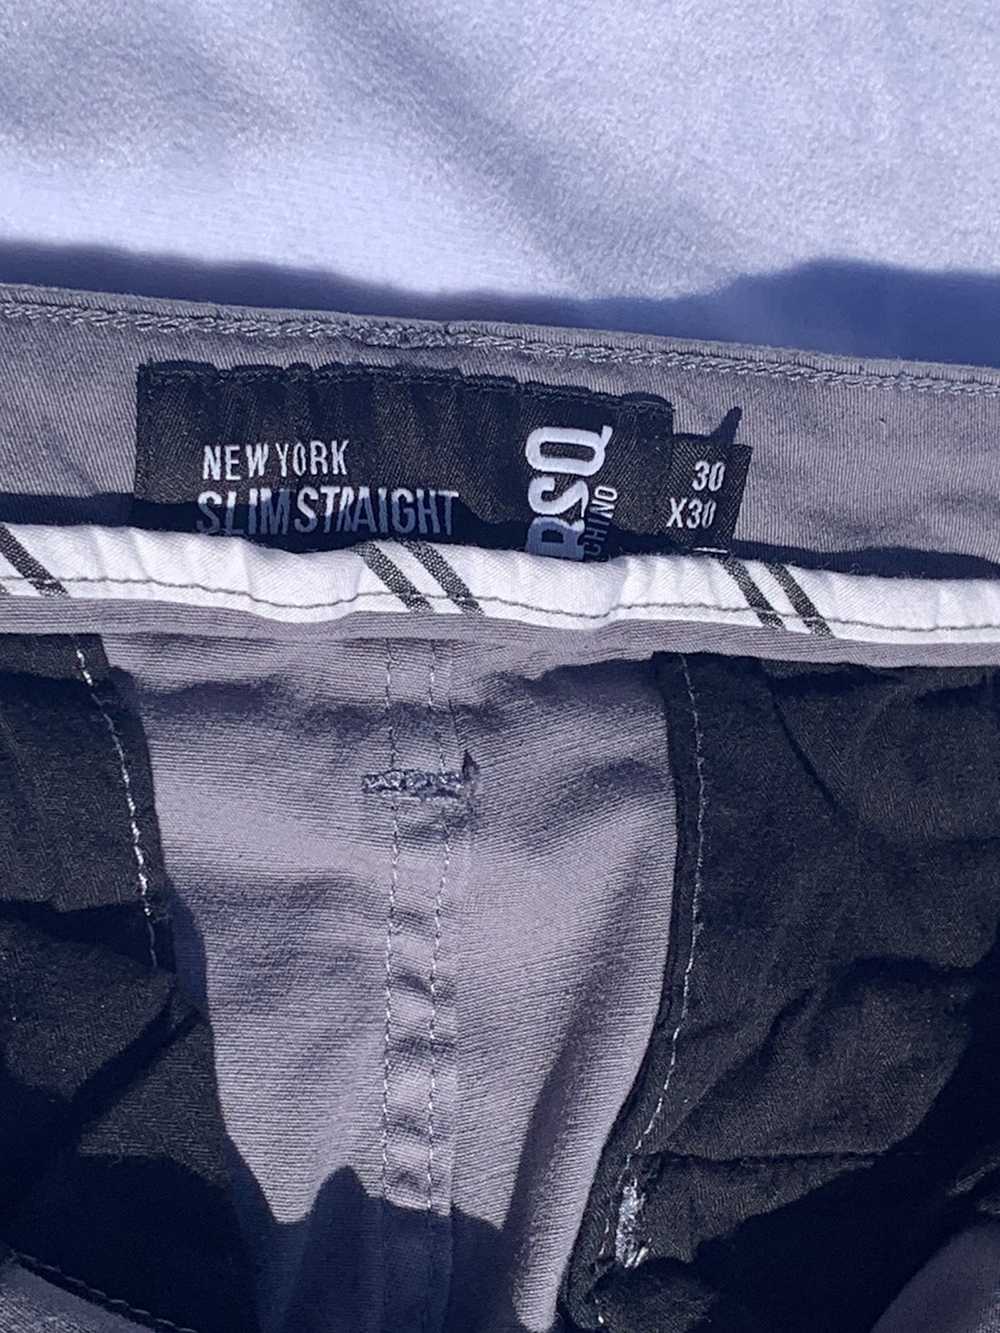 Rsq RSQ Mens Slim Straight Chino Pants - image 3